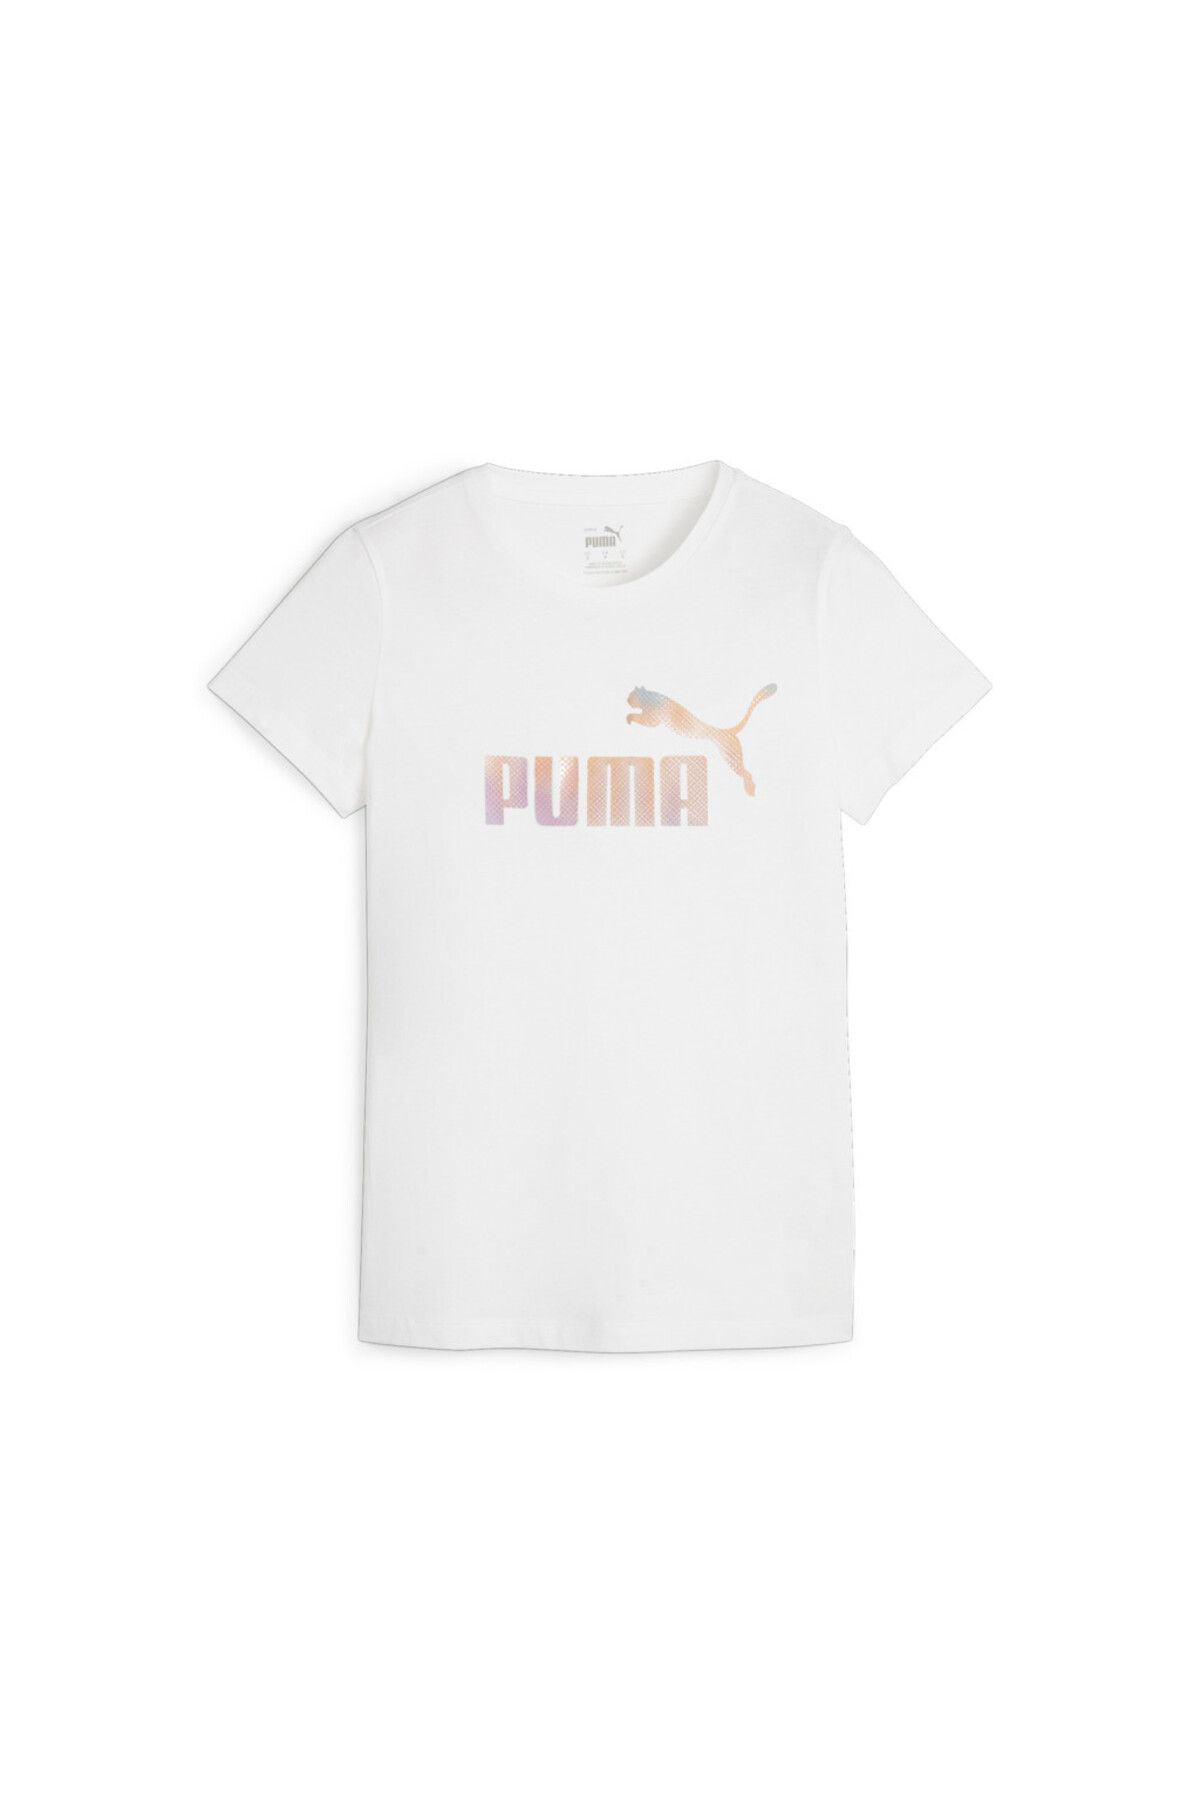 Puma Essentials+ Kadın Beyaz Günlük Stil T-Shirt 67992102